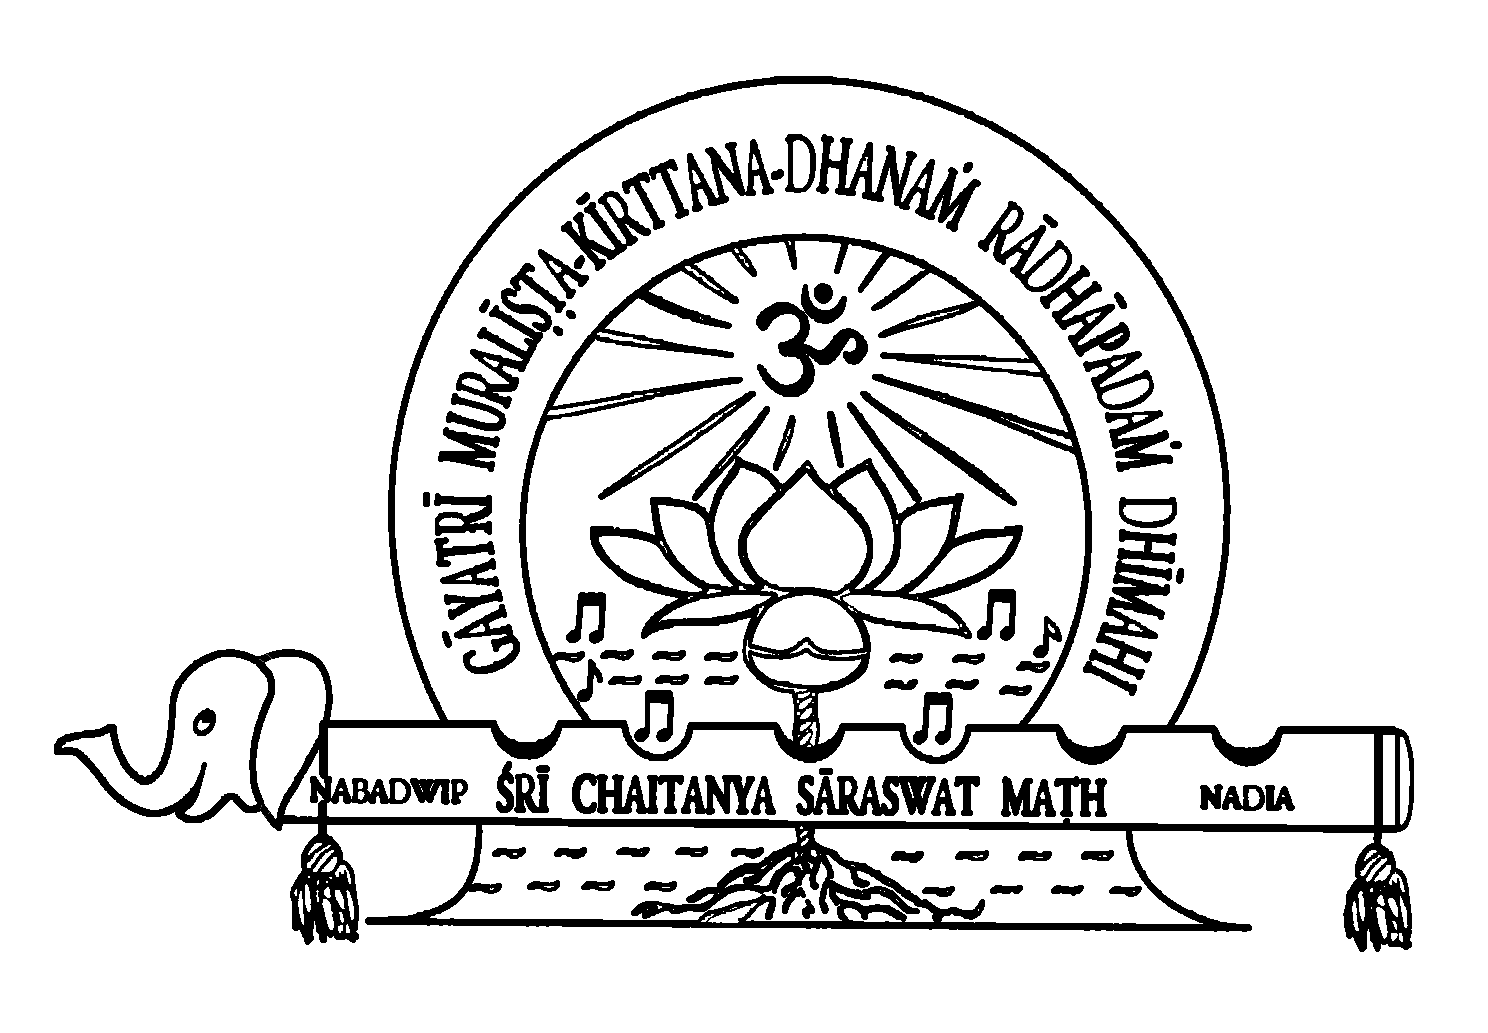 Black Math Logo - The Logo of Sri Chaitanya Saraswat Math